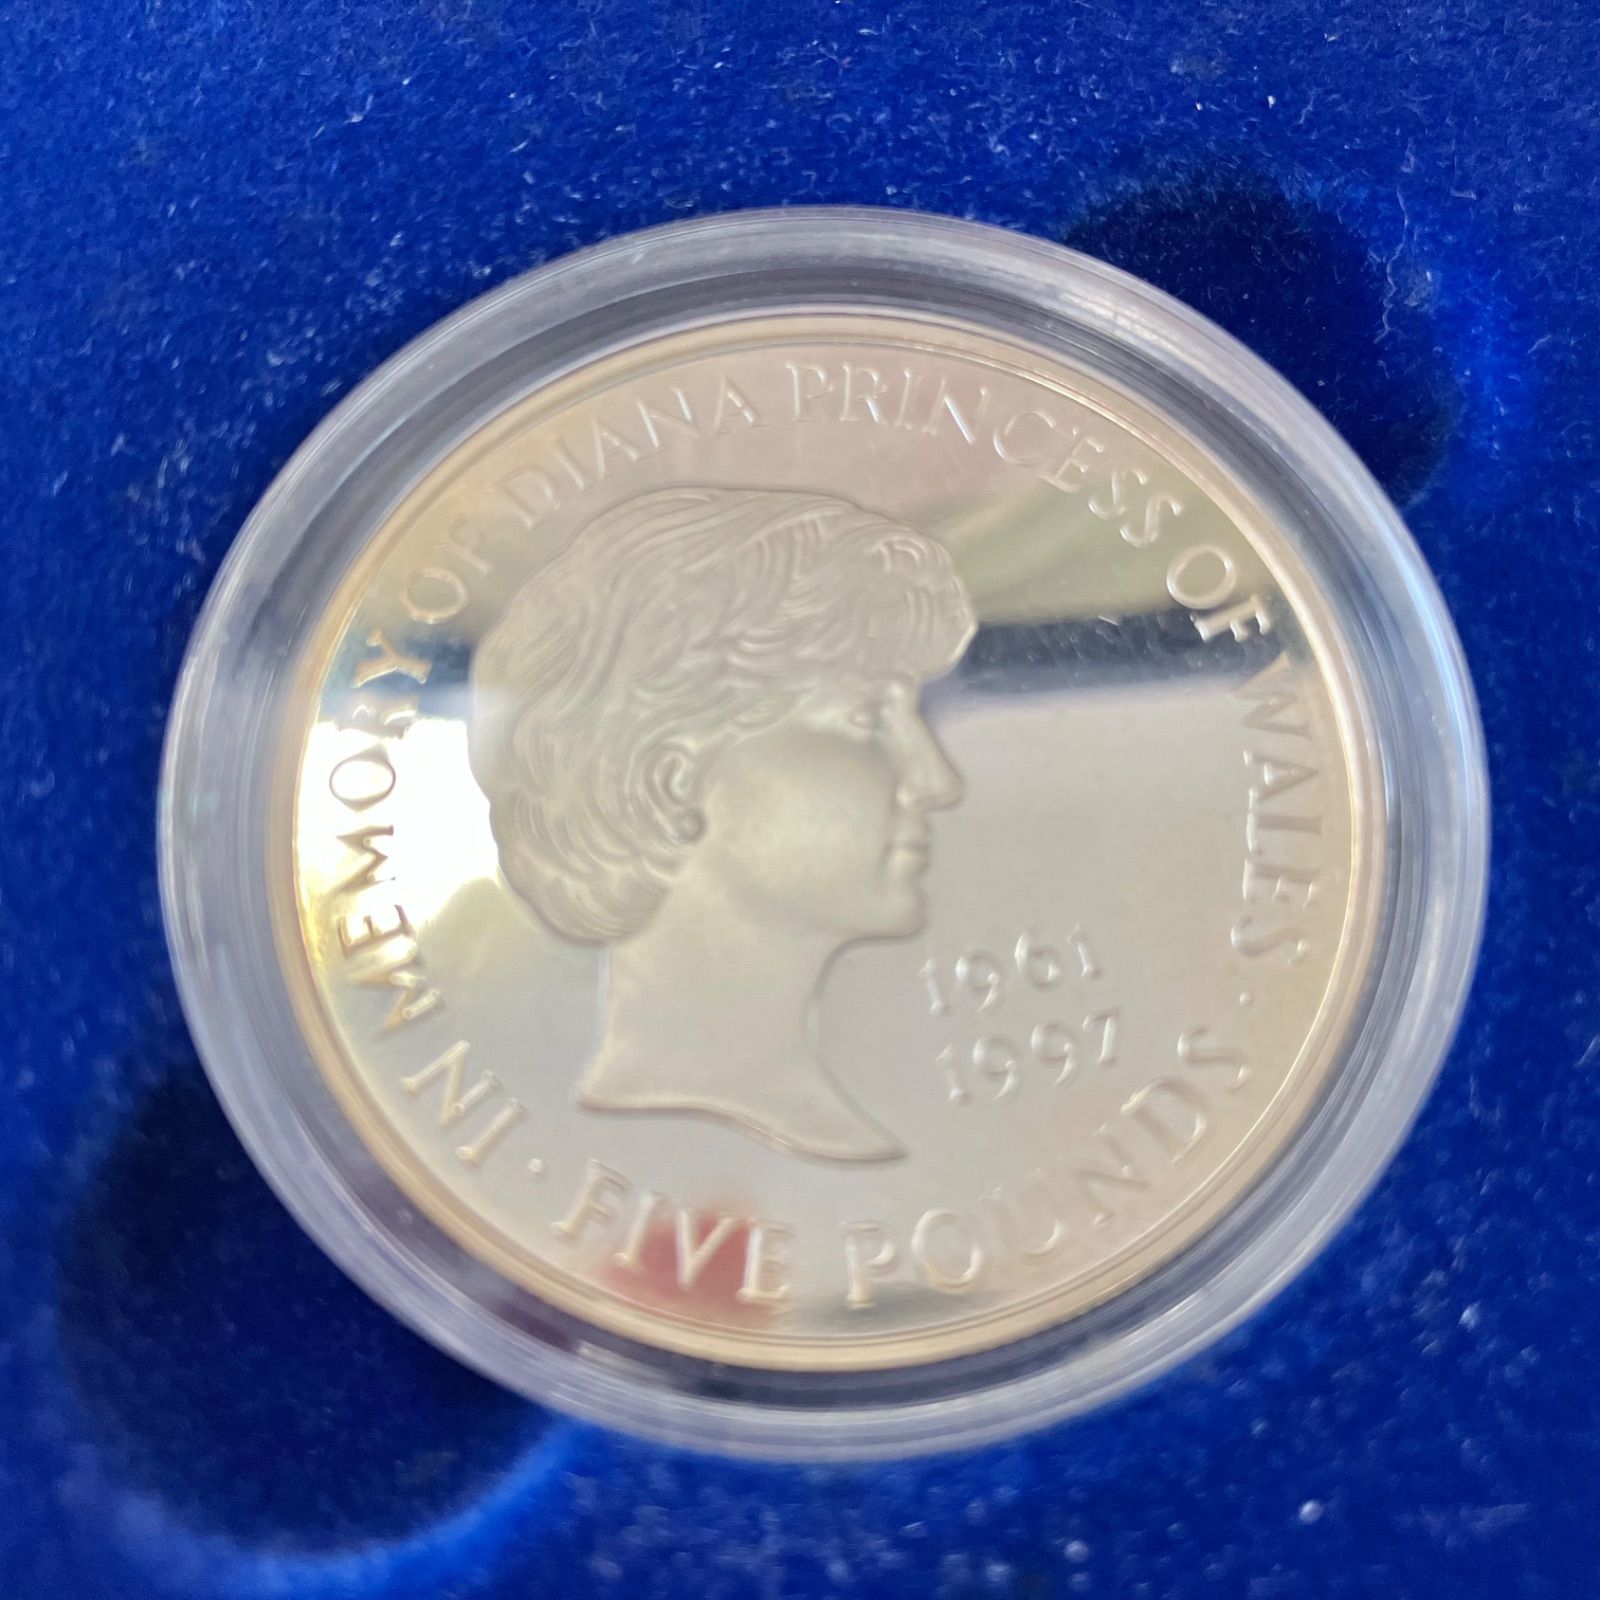 【170293】1999年 ダイアナ妃 追悼記念コイン 5ポンド K22 金貨 銀貨 セット 未使用